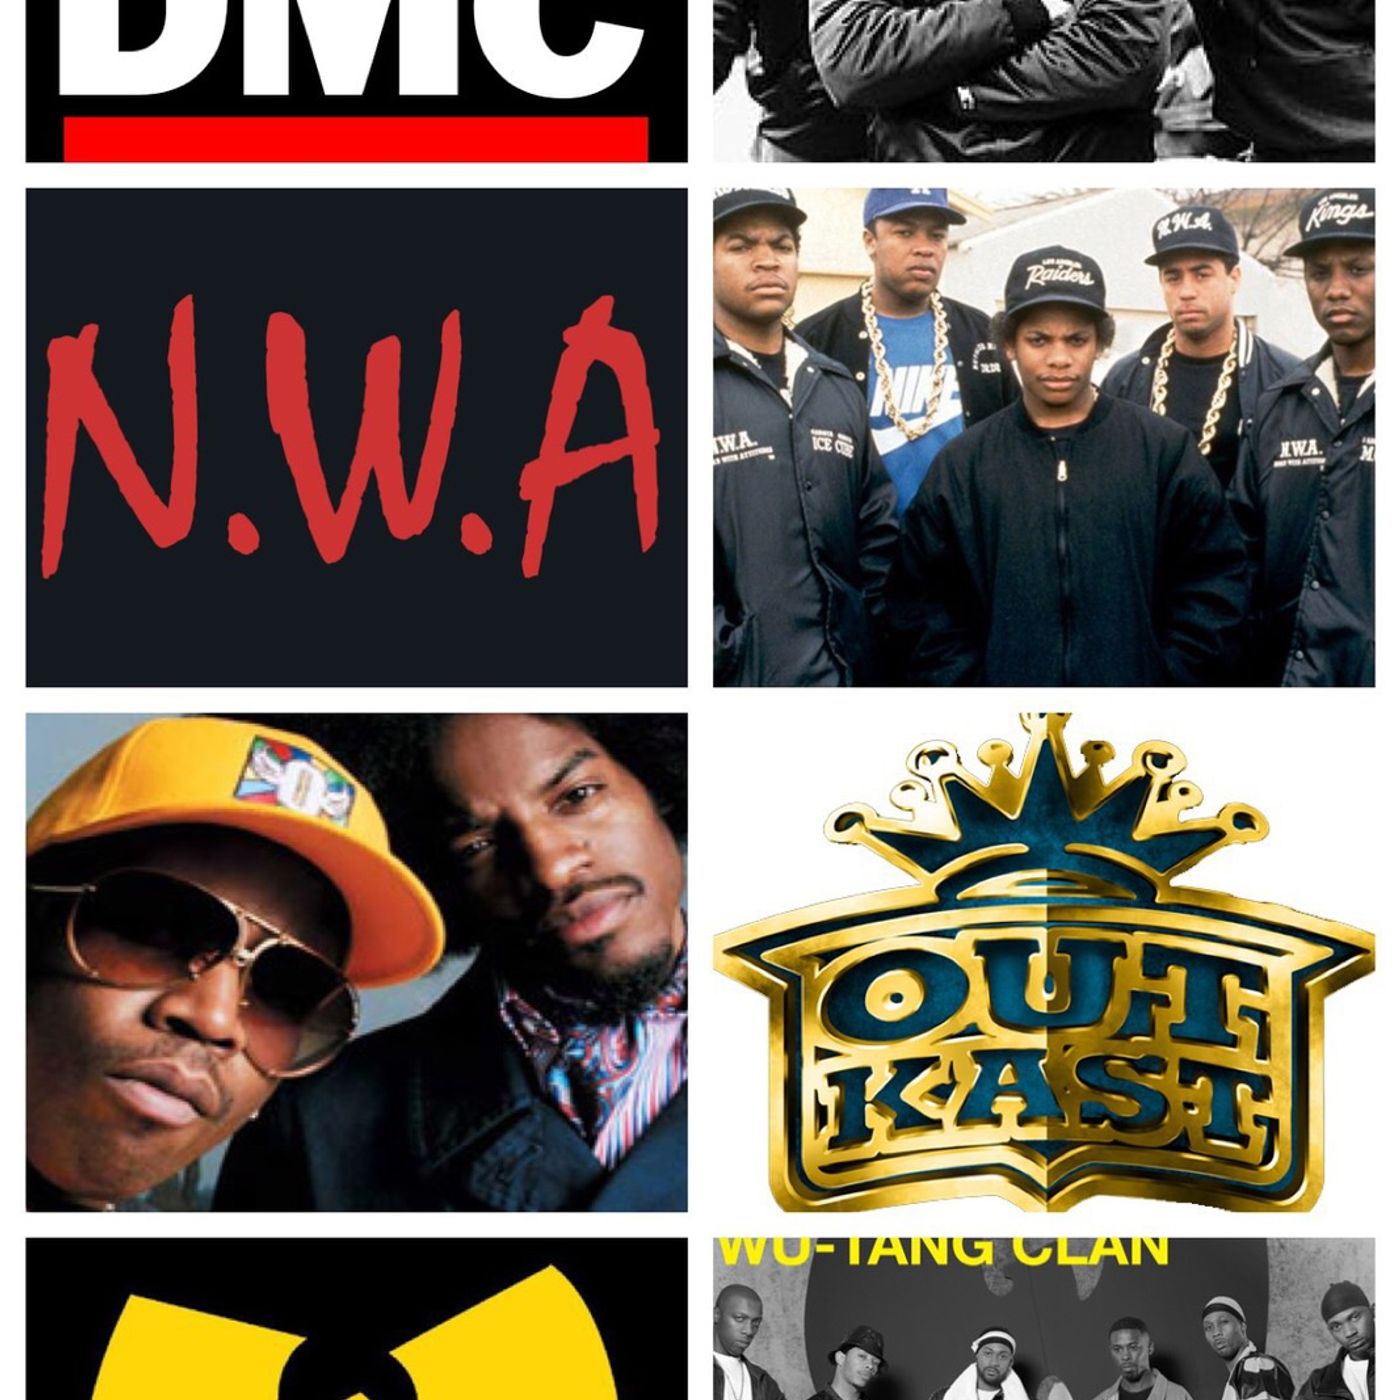 14: My Rushmore of rap groups